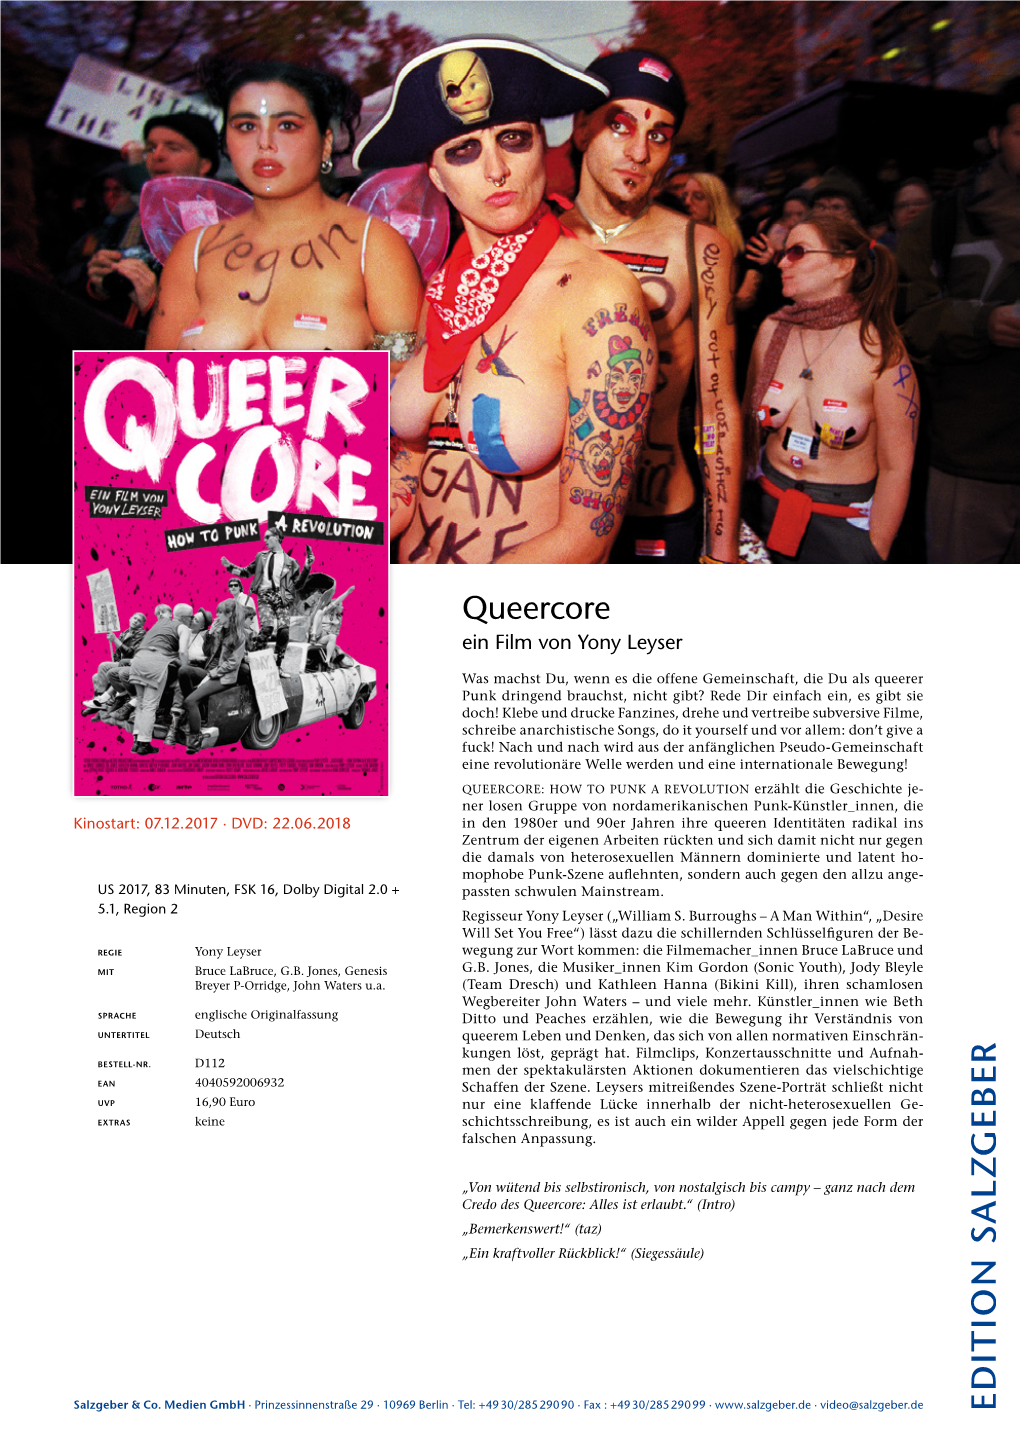 Queercore Ein Film Von Yony Leyser